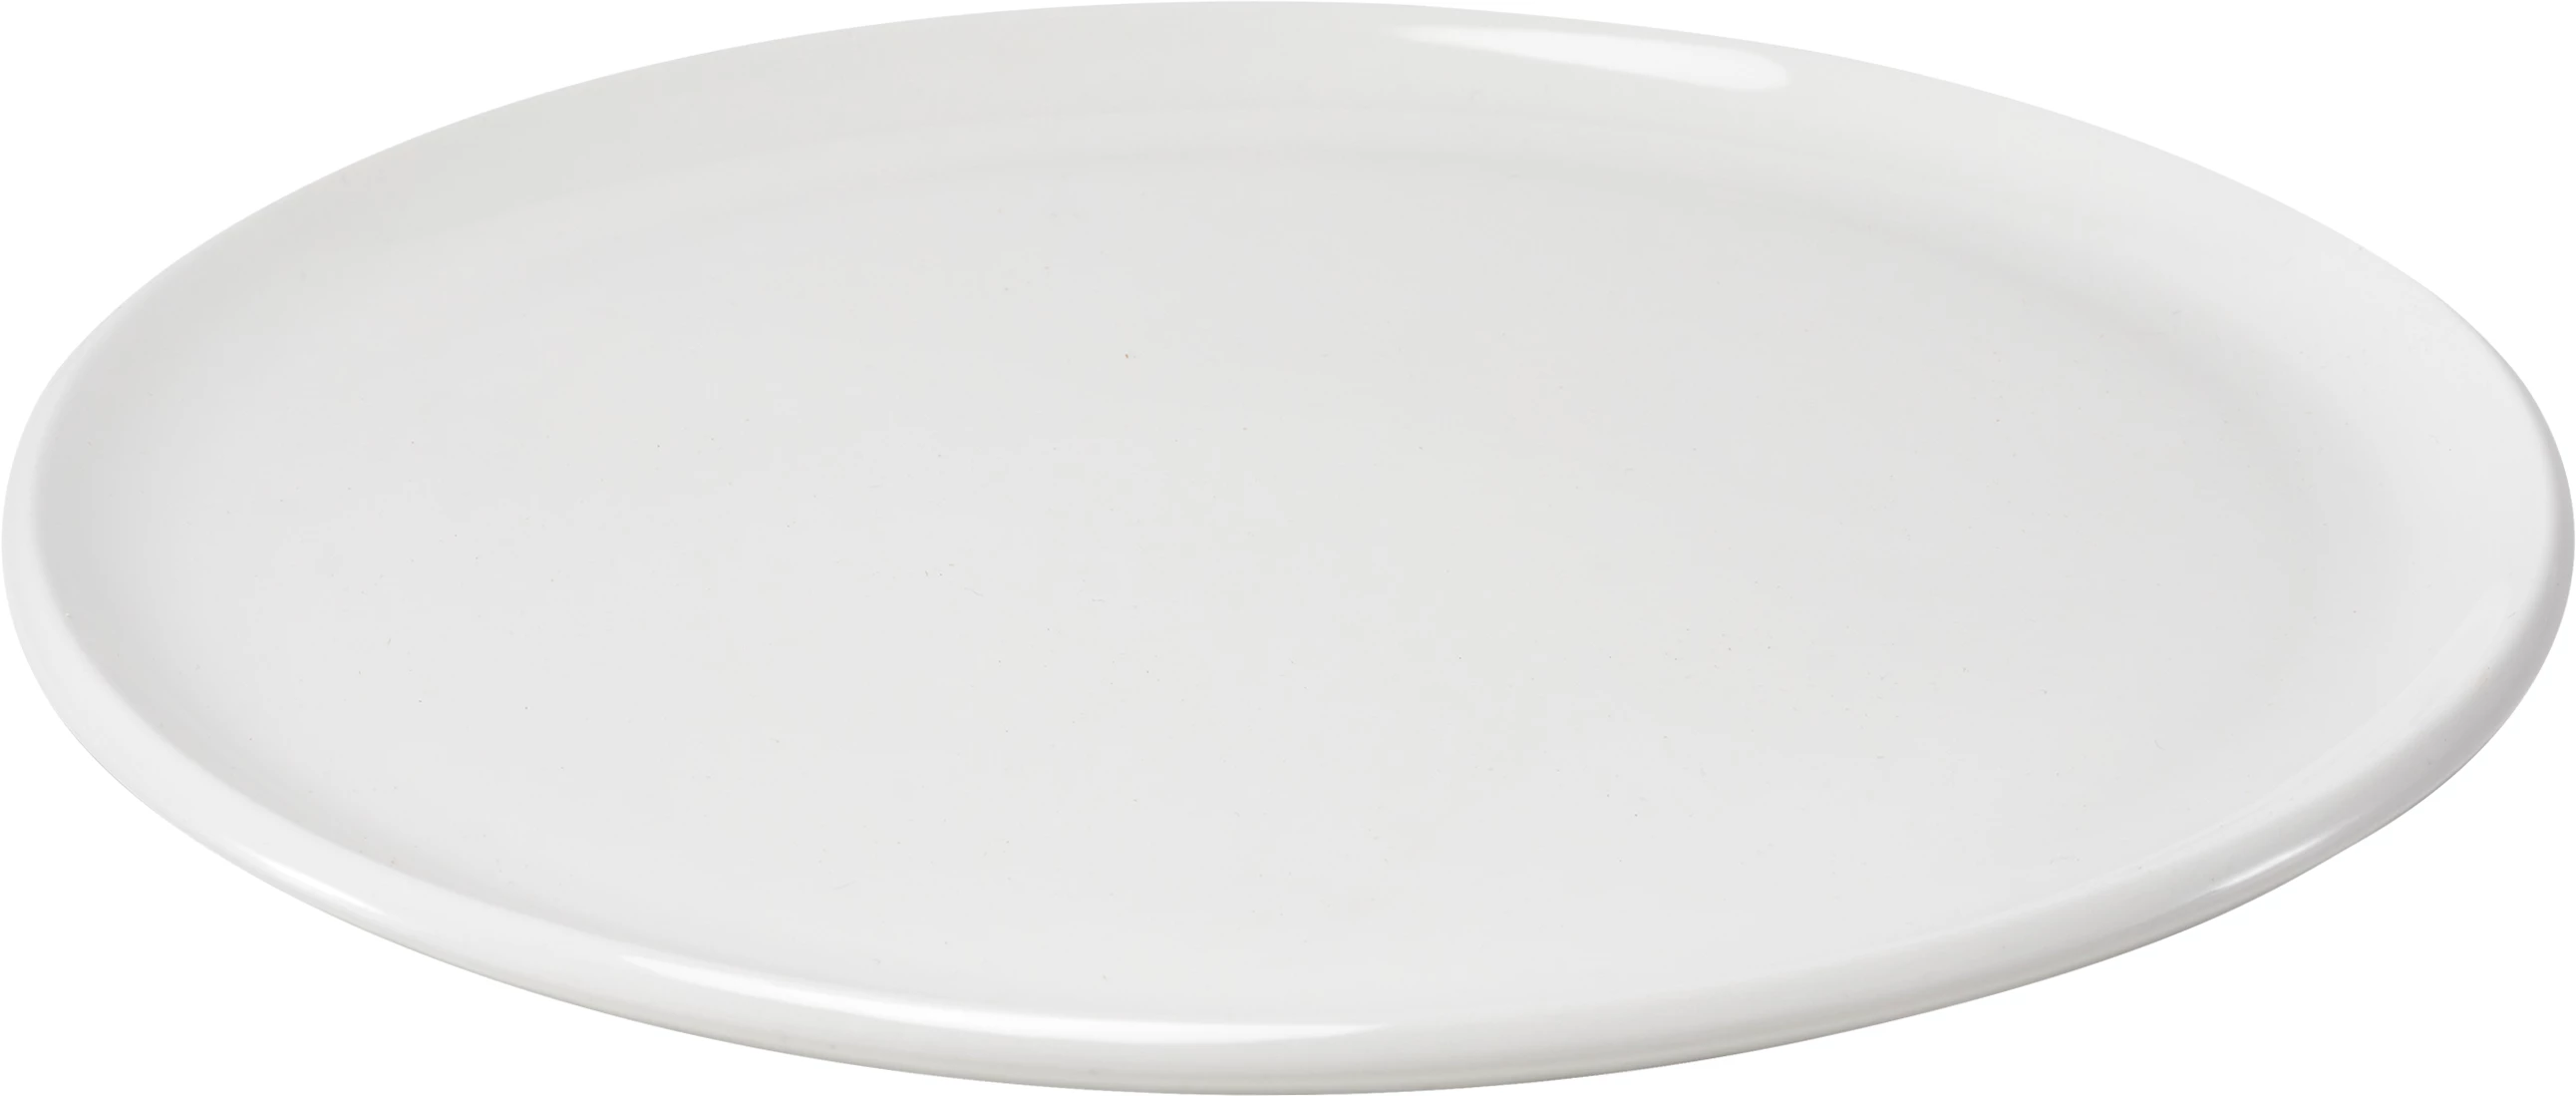 Figgjo Pax tallerken, flad, hvid, ø24 cm